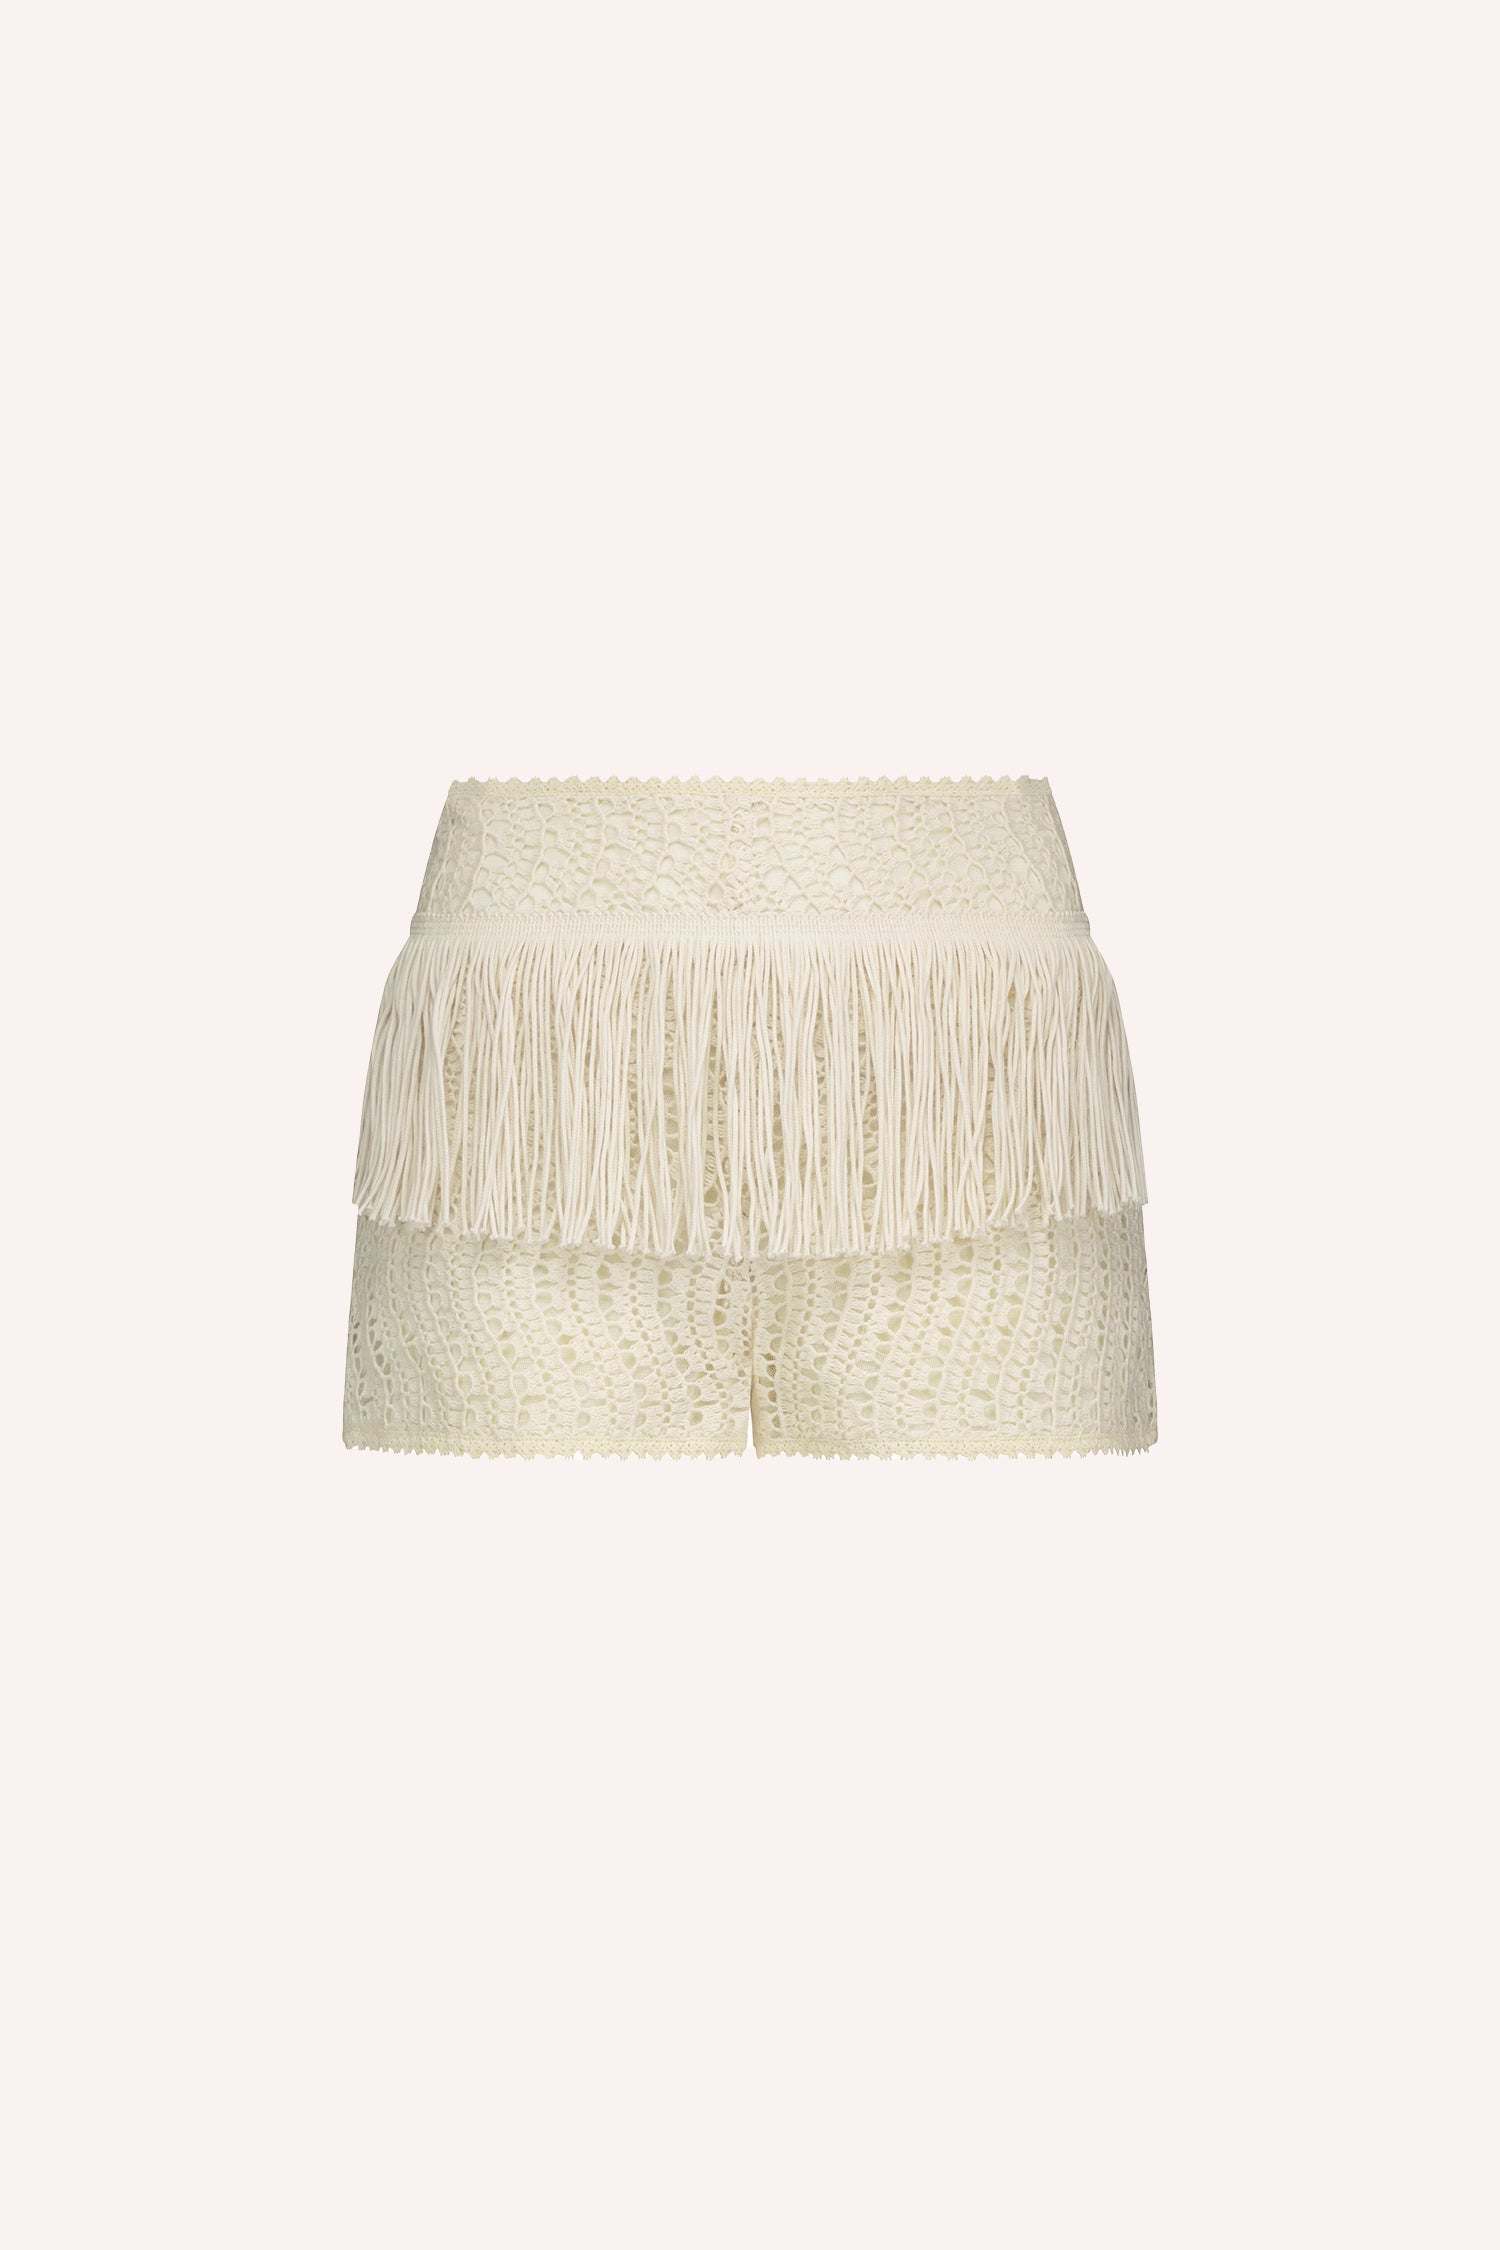 Anna Sui Crochet Lace Shorts Crema, con un cinturón corto de flecos alrededor de las caderas, 